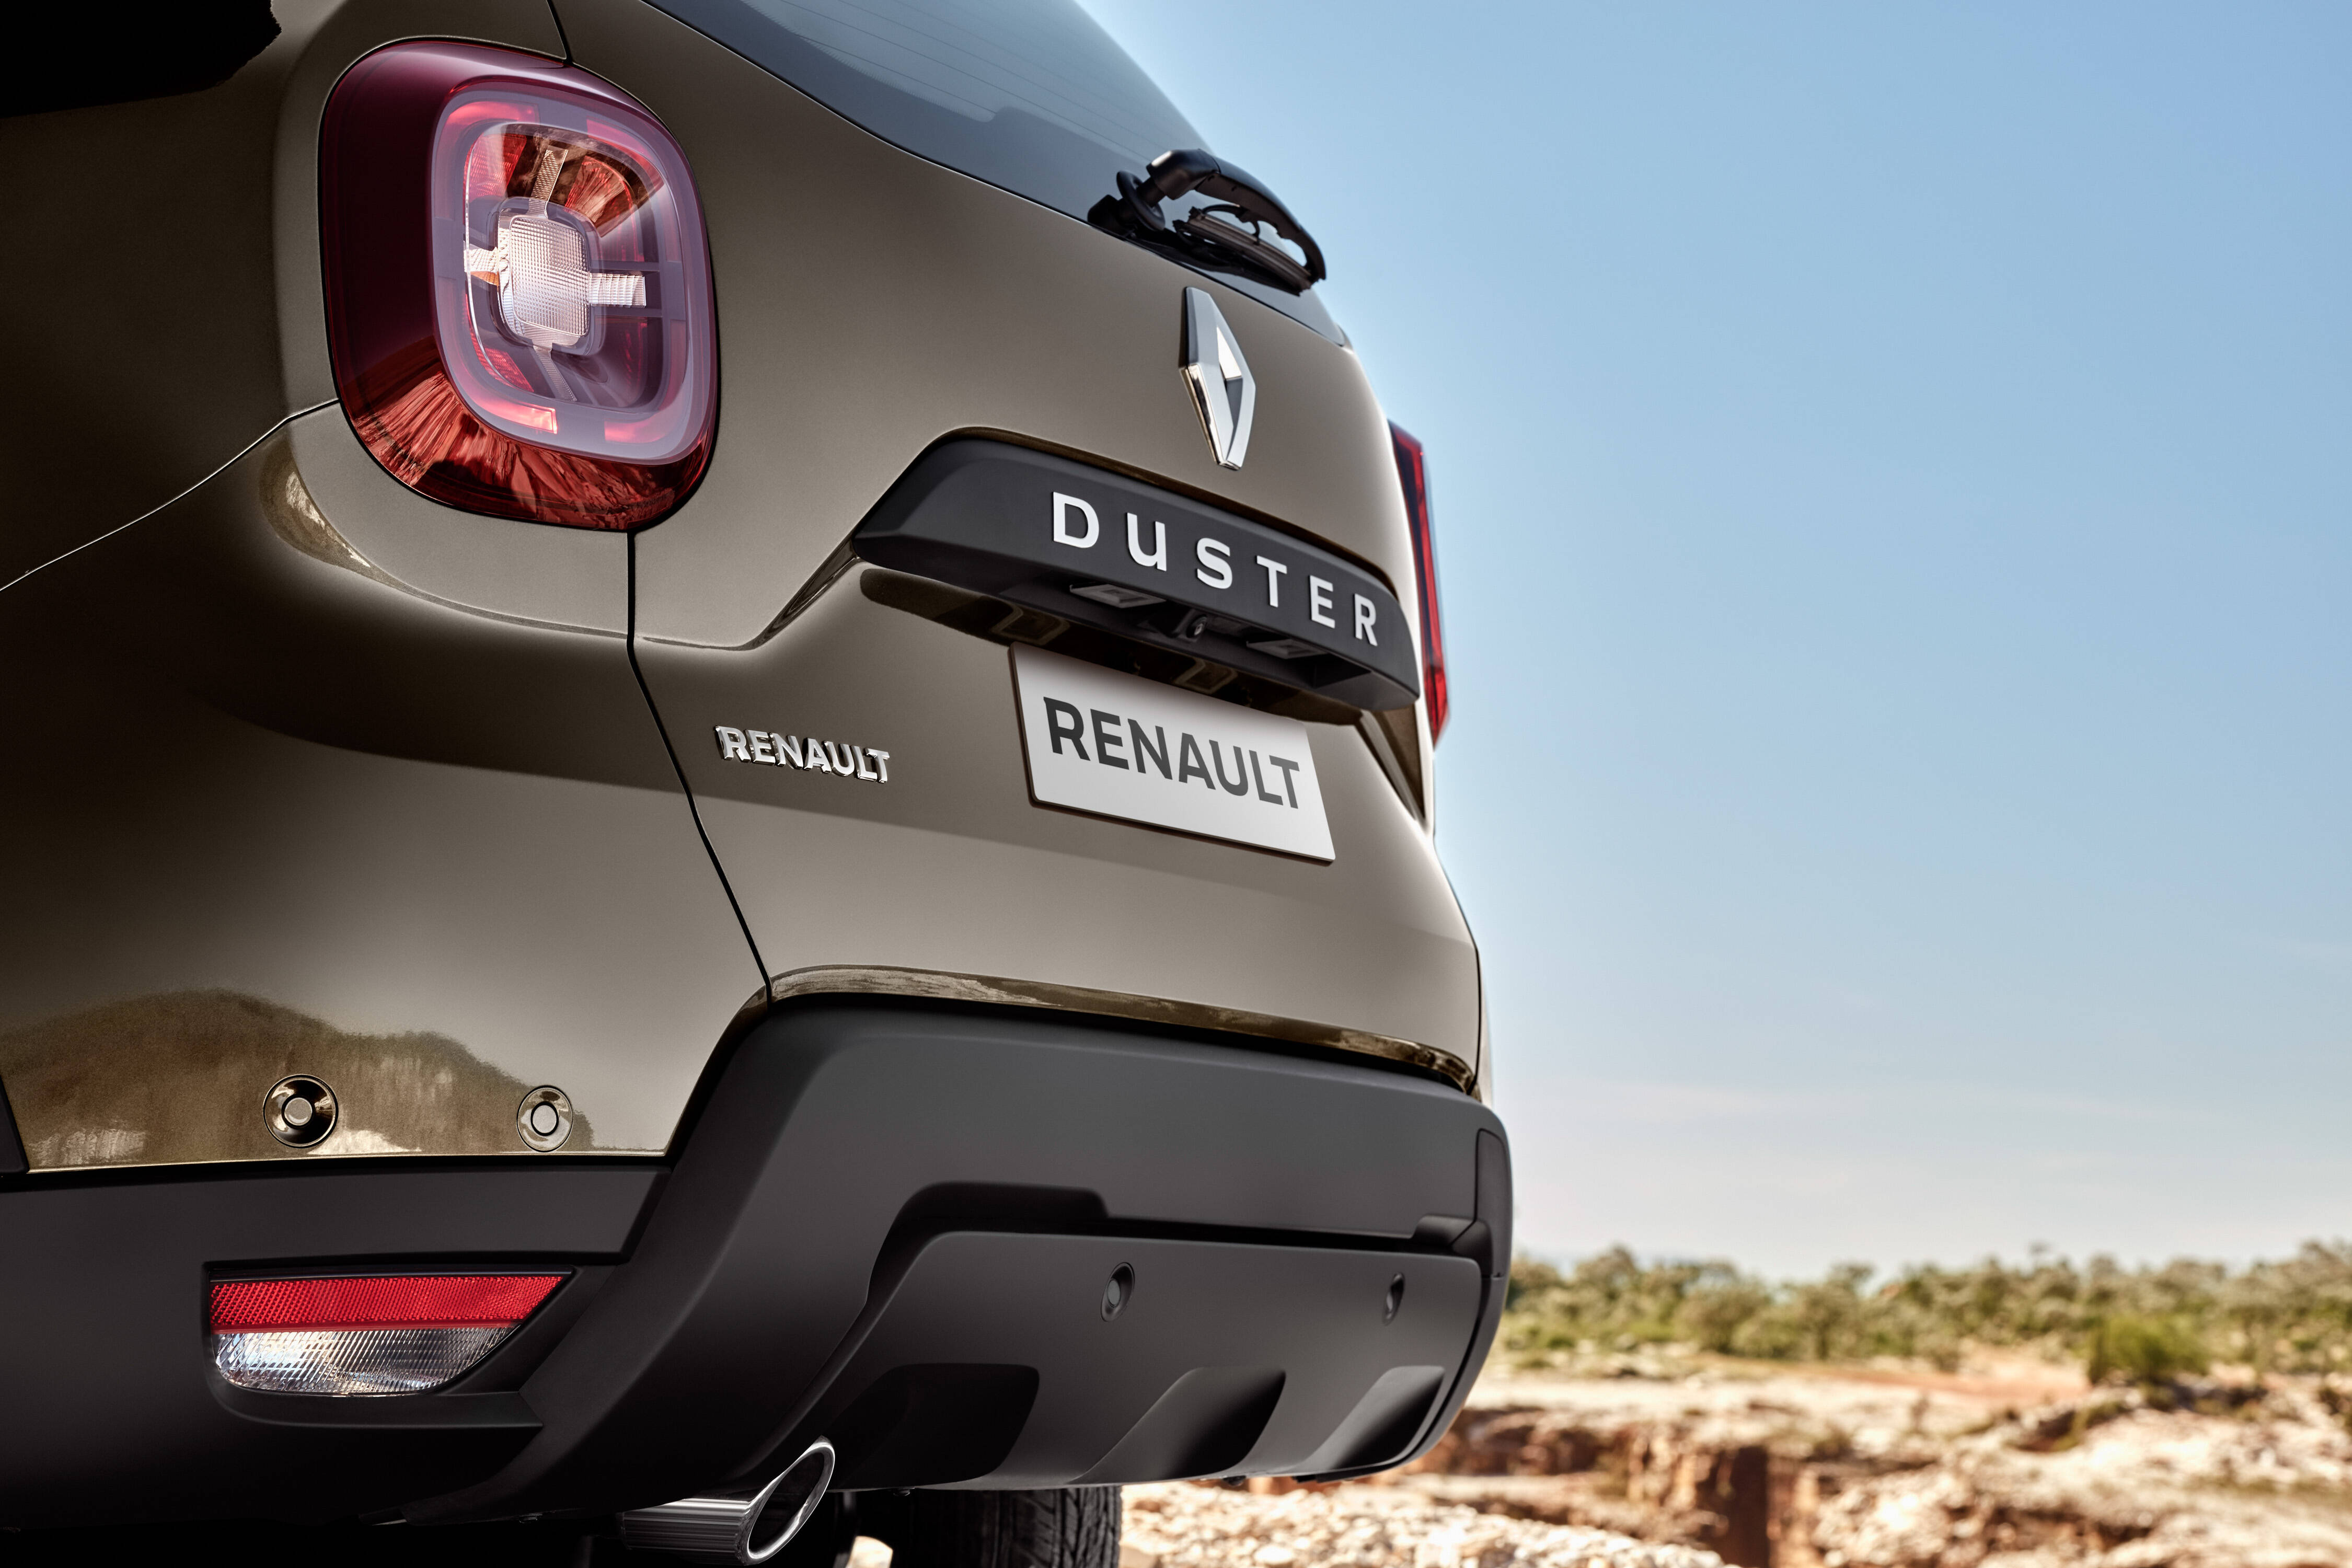 Renault Duster 2020. Foto: Divulgação